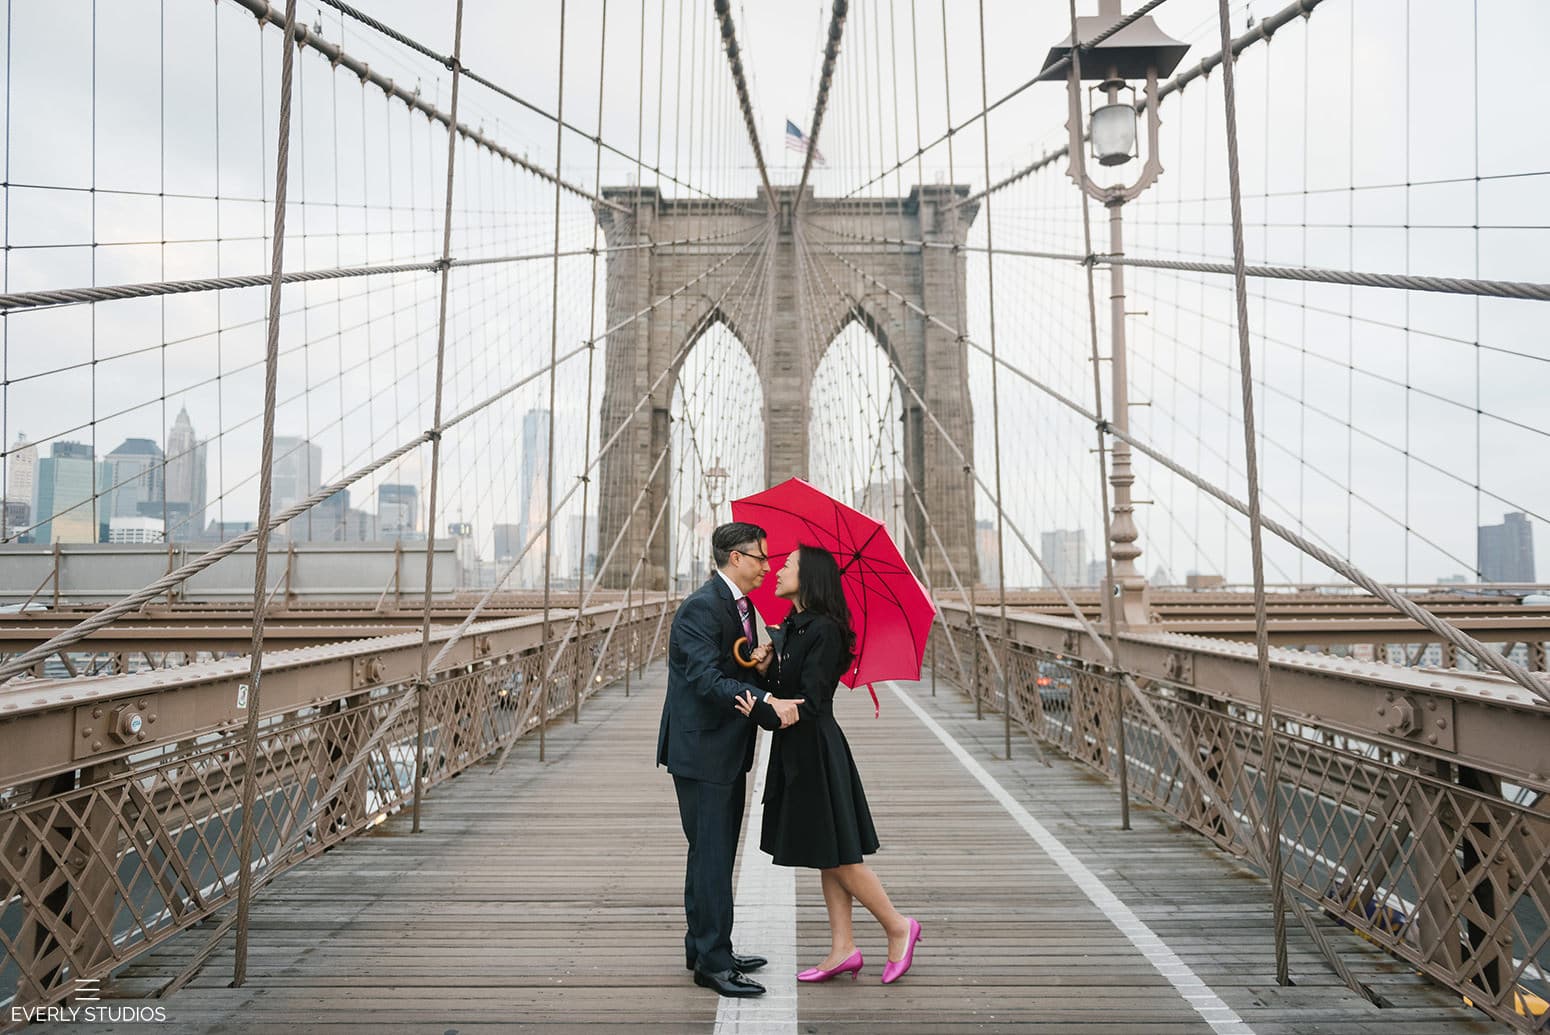 Brooklyn Bridge wedding. Iconic New York wedding locations with a view. Photo by Brooklyn wedding photographer Everly Studios, www.everlystudios.com